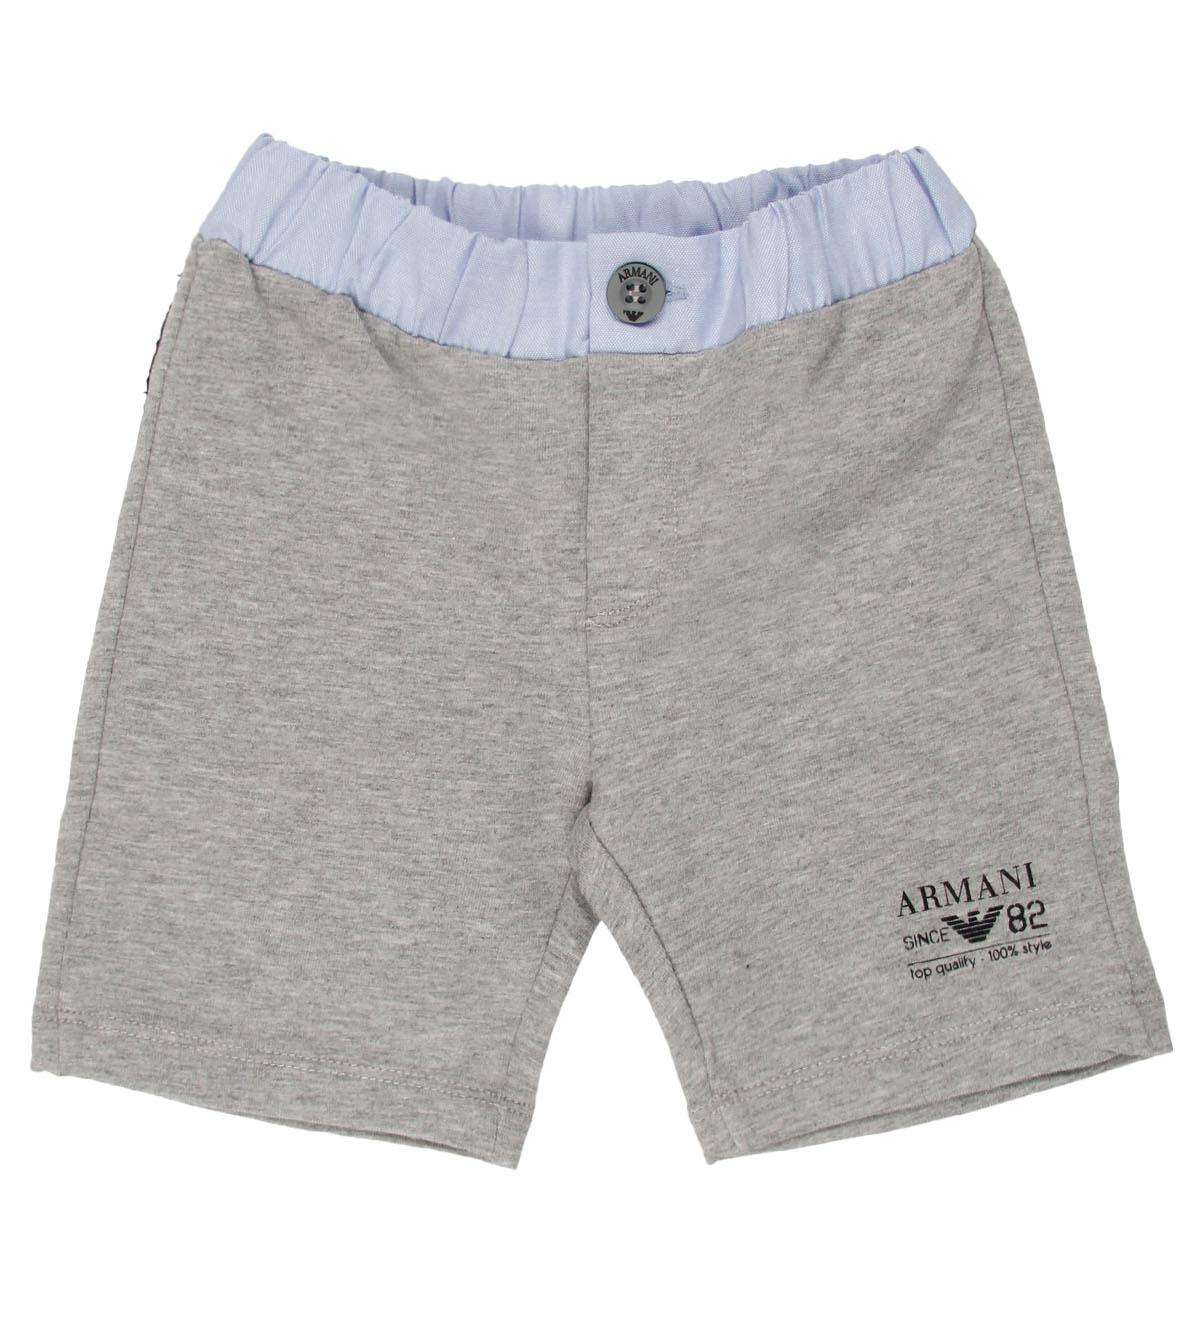 Foto Armani Junior Grey Bermuda Pants-12 Months foto 260423